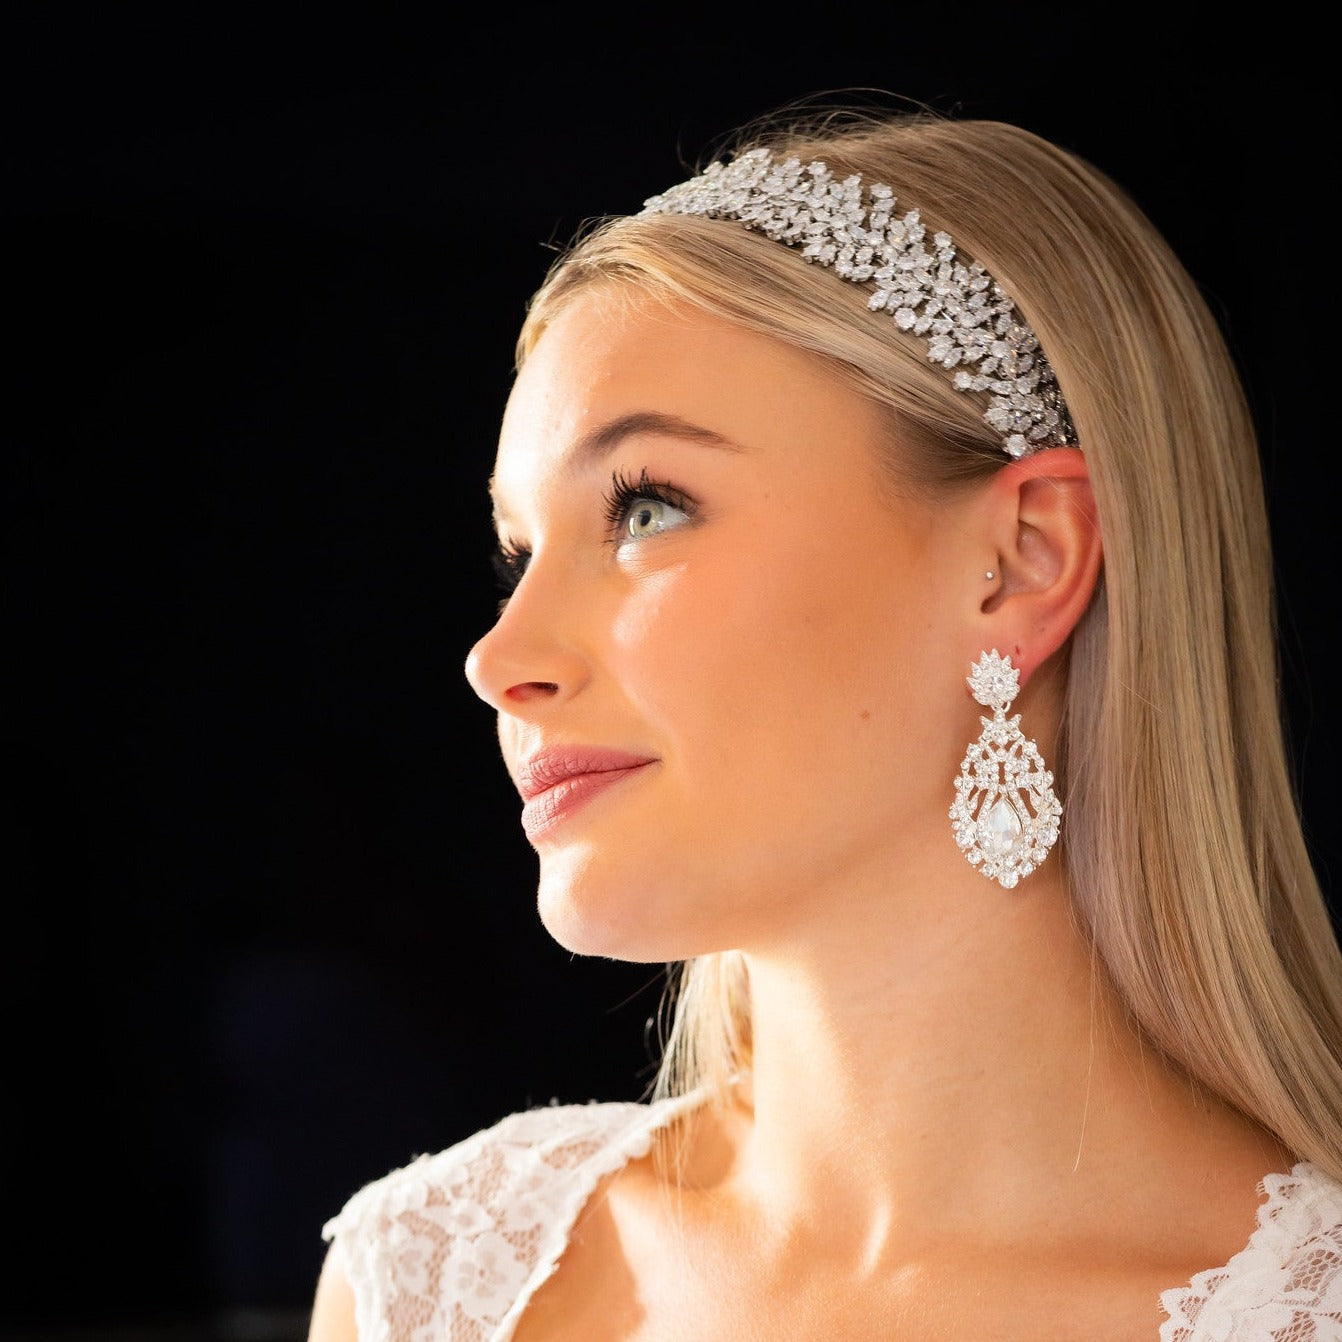 Stefania, Vintage inspired bridal wedding earrings